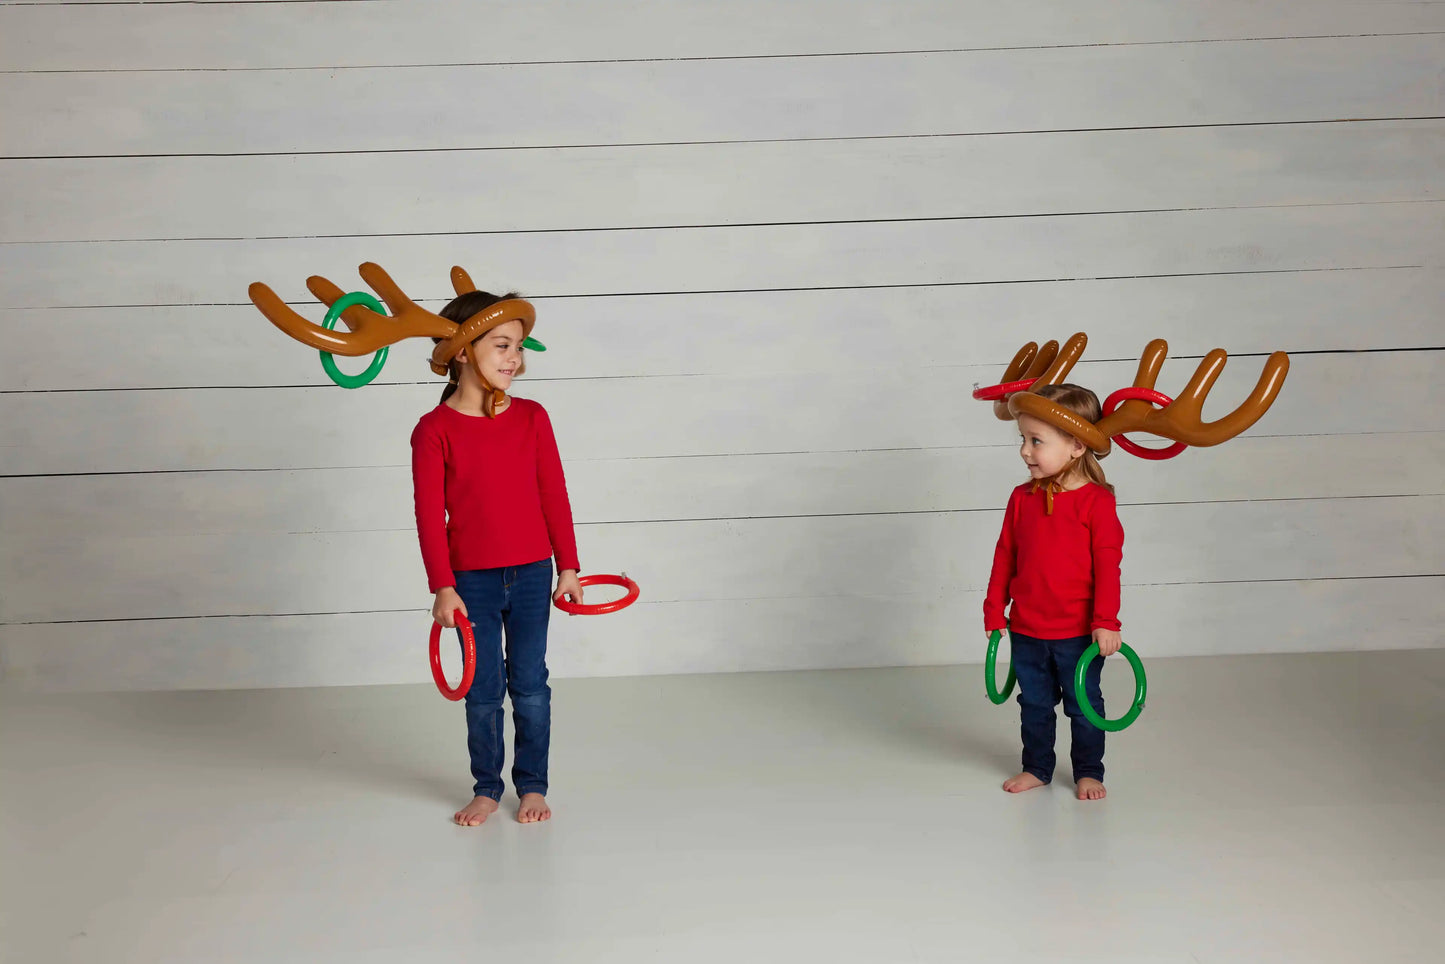 Reindeer Ring Toss Game Set  - Doodlebug's Children's Boutique